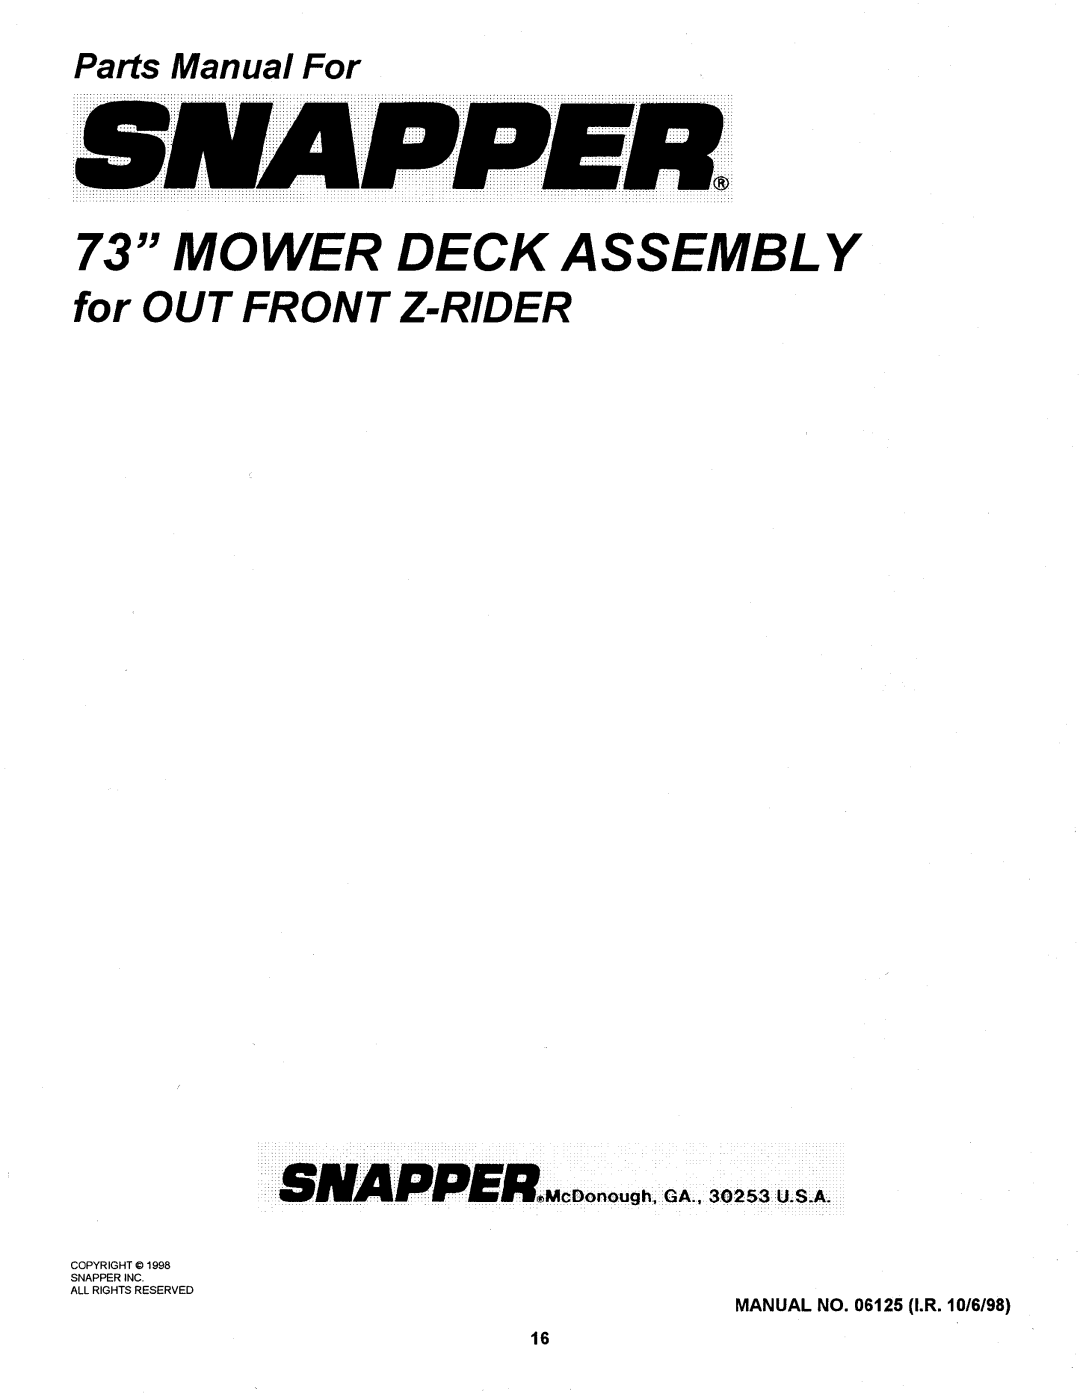 Snapper 06125 manual 